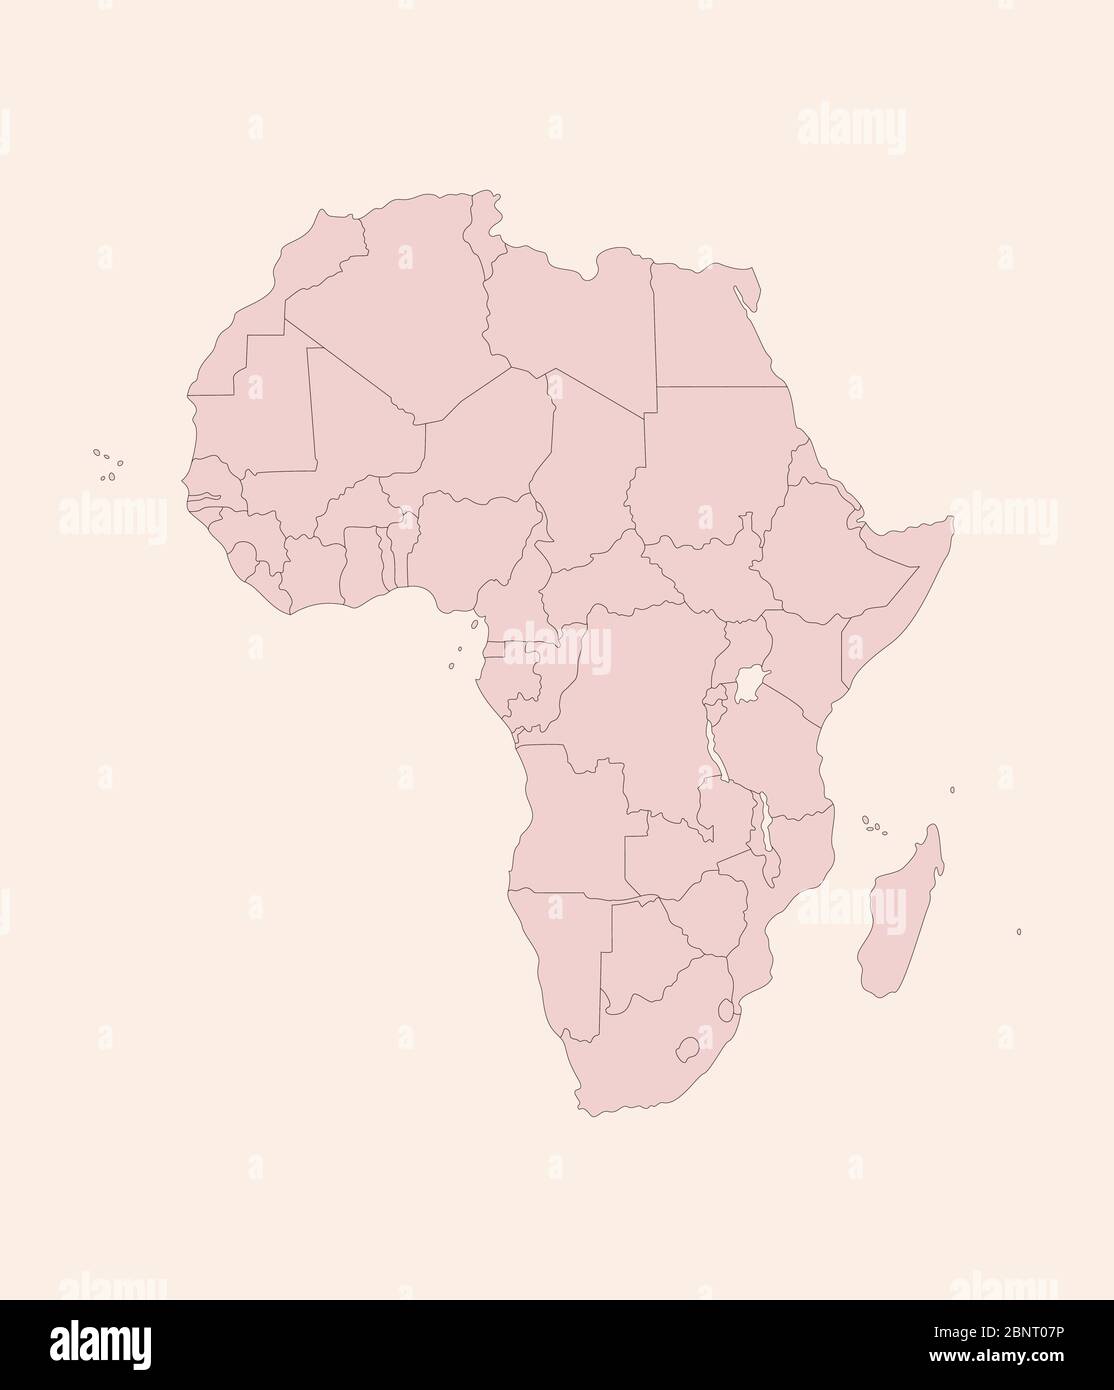 Mappa politica dell'Africa con grafica dei paesi. Vettore di sfondo tonalità rosa vintage. Perfetto per concetti aziendali, sfondi, sfondo, banne Illustrazione Vettoriale